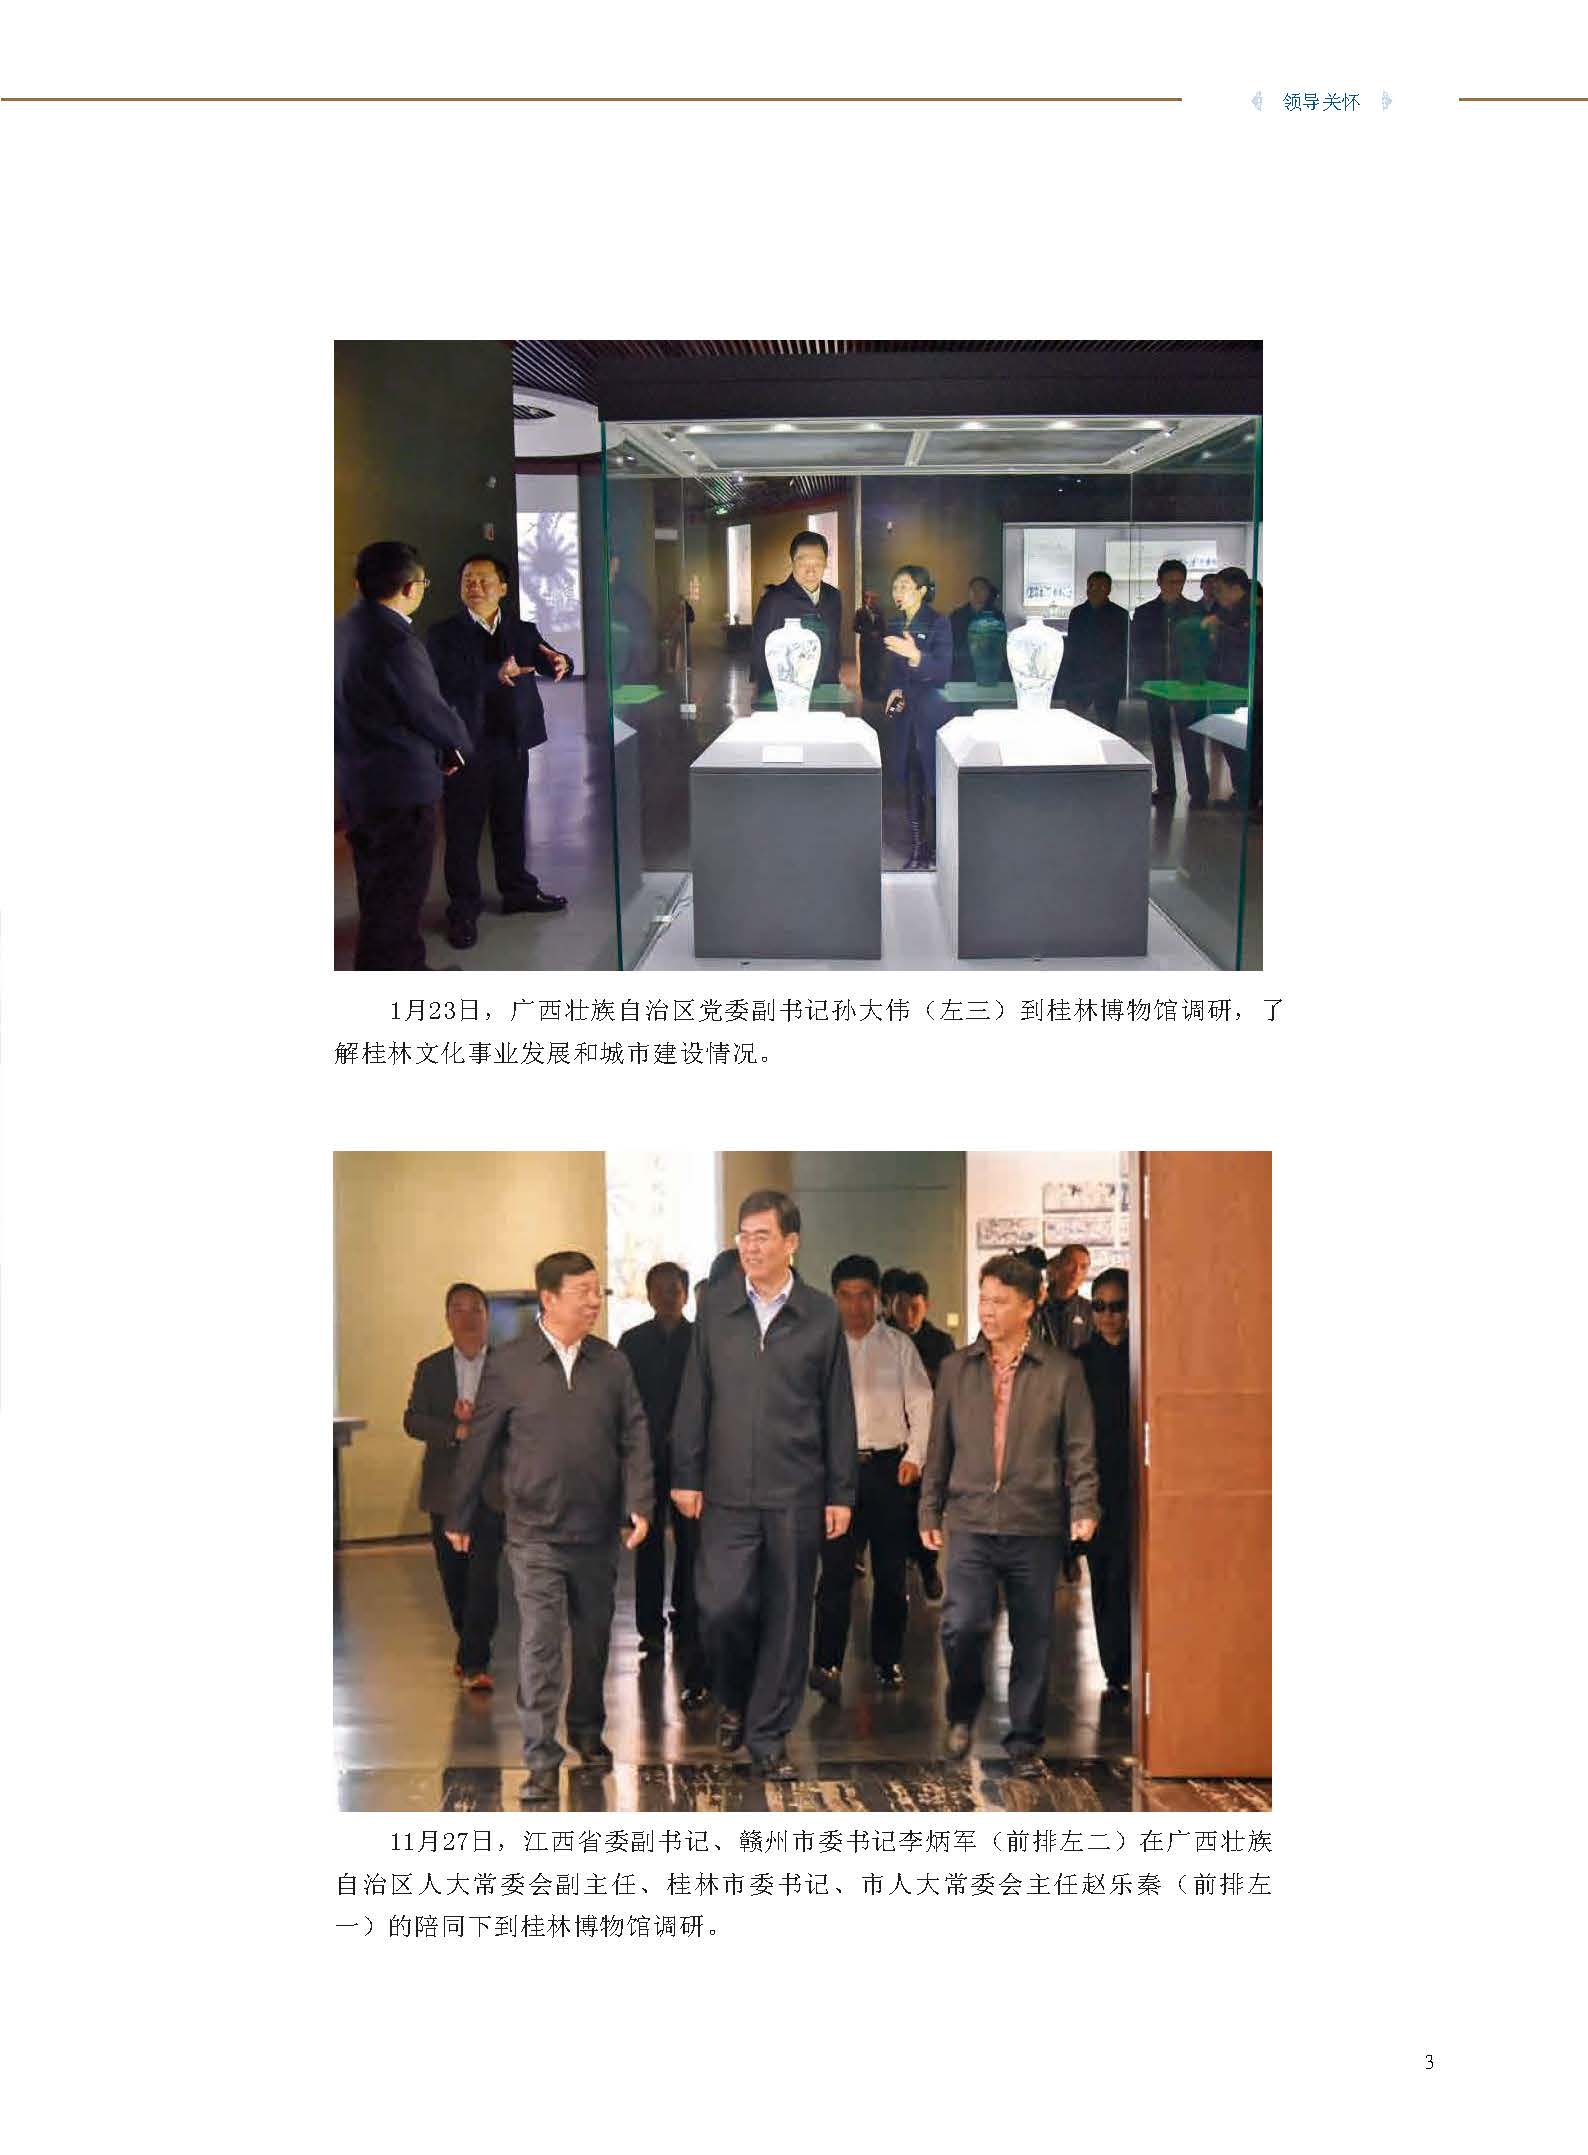 桂林博物馆2018年度报告.pdf_页面_005.jpg